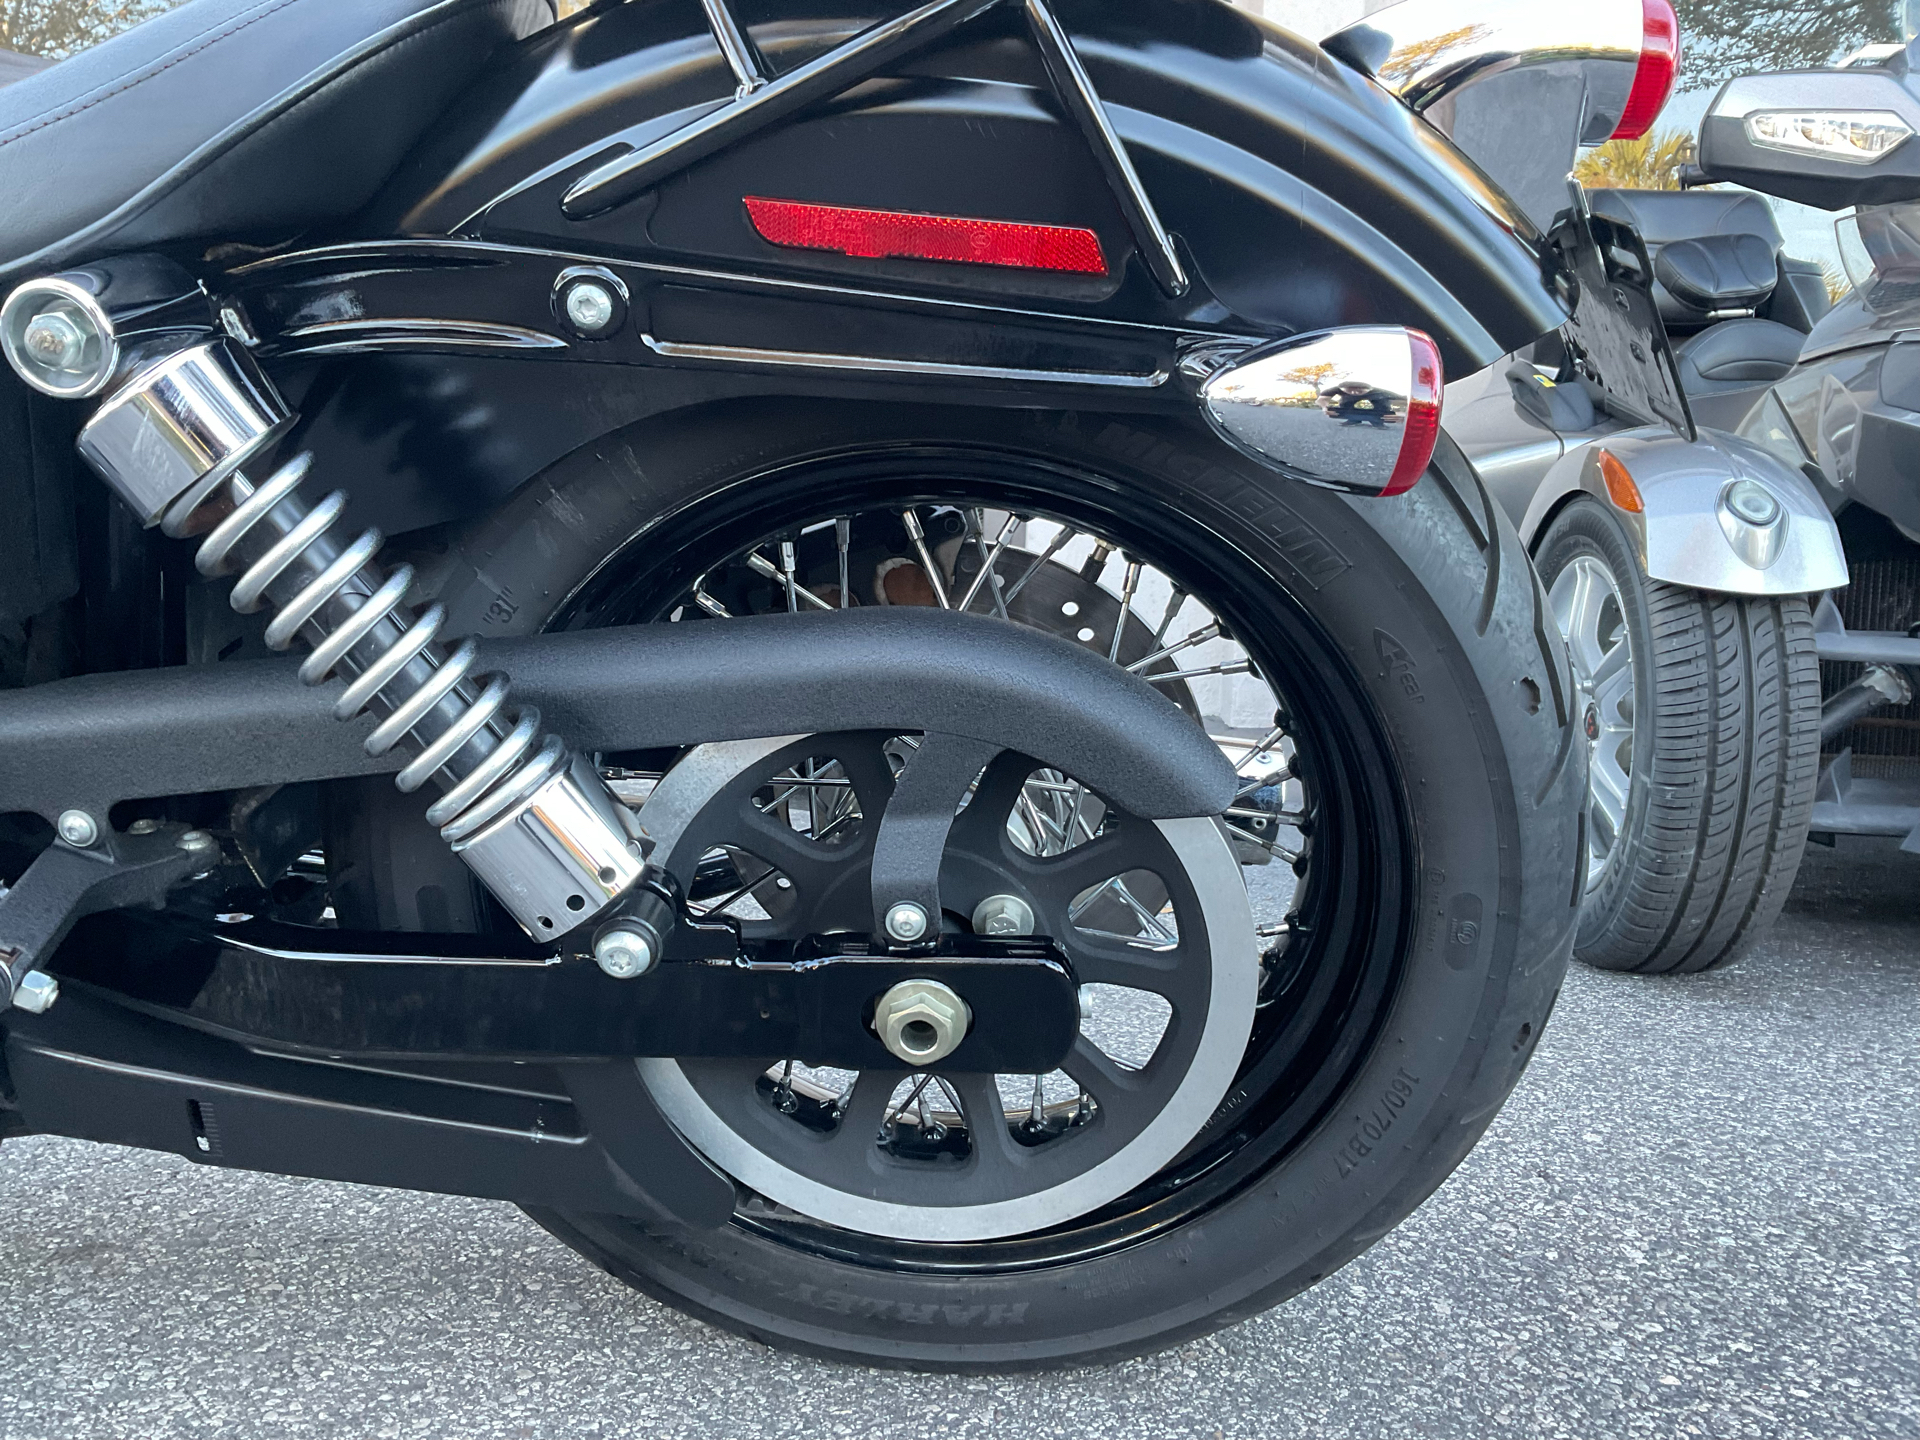 2011 Harley-Davidson Dyna® Street Bob® in Sanford, Florida - Photo 11